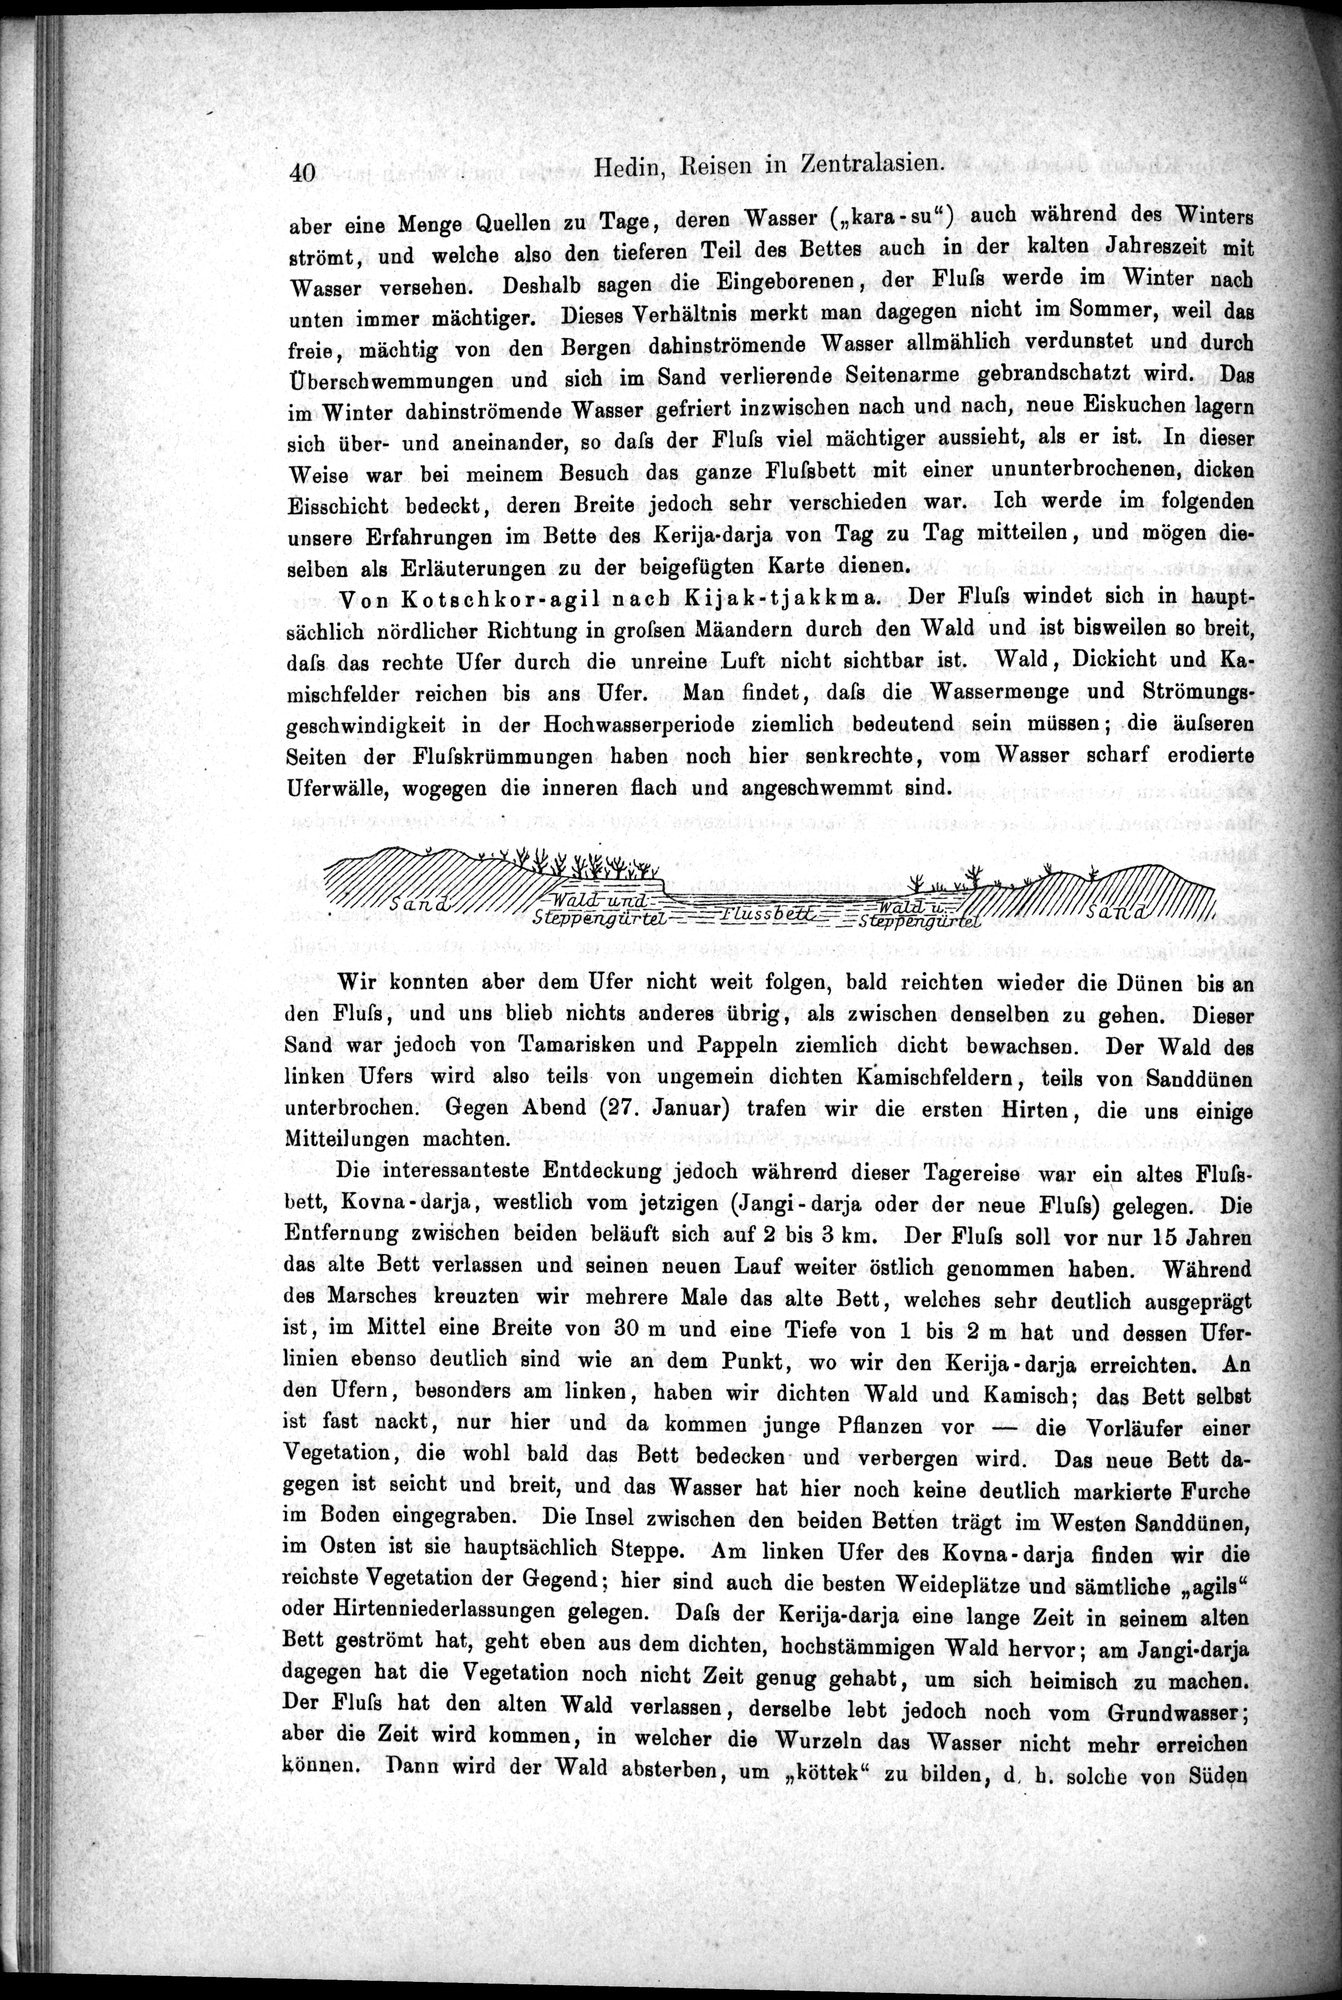 Die Geographische-Wissenschaftlichen Ergebnisse meiner Reisen in Zentralasien, 1894-1897 : vol.1 / Page 52 (Grayscale High Resolution Image)